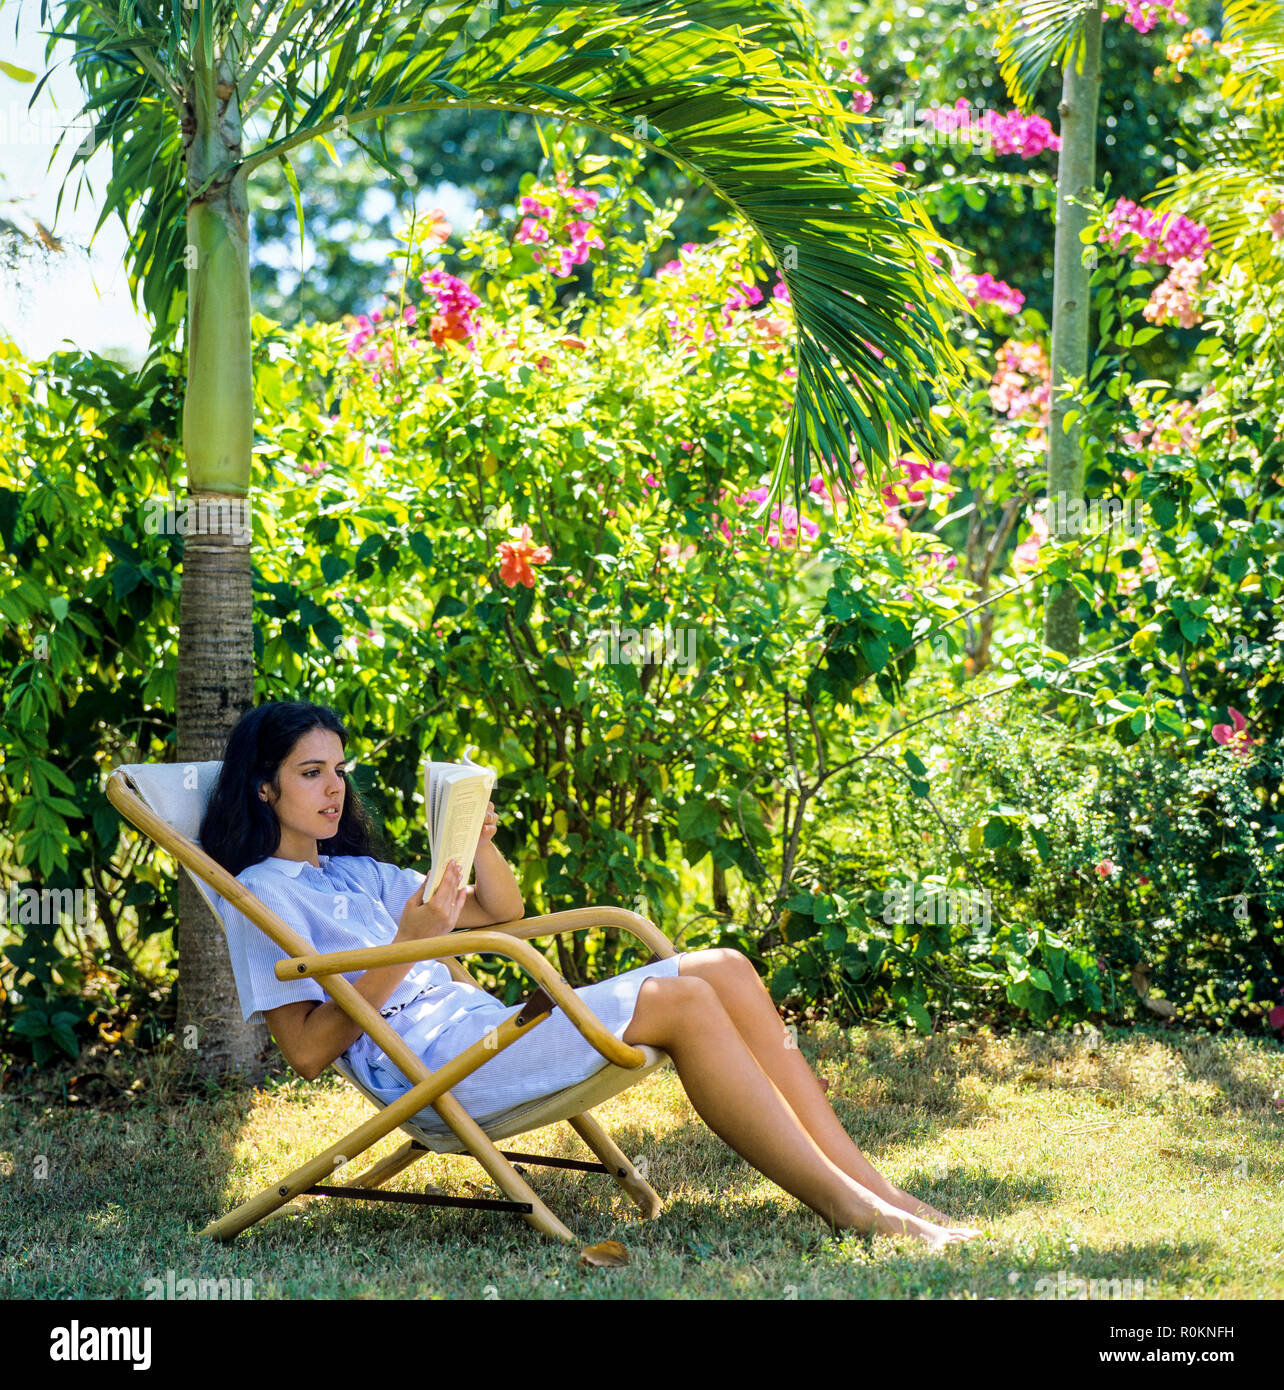 Giovane donna seduta in sedia a sdraio e la lettura di un libro, giardino tropicale, Guadalupa, French West Indies, Foto Stock